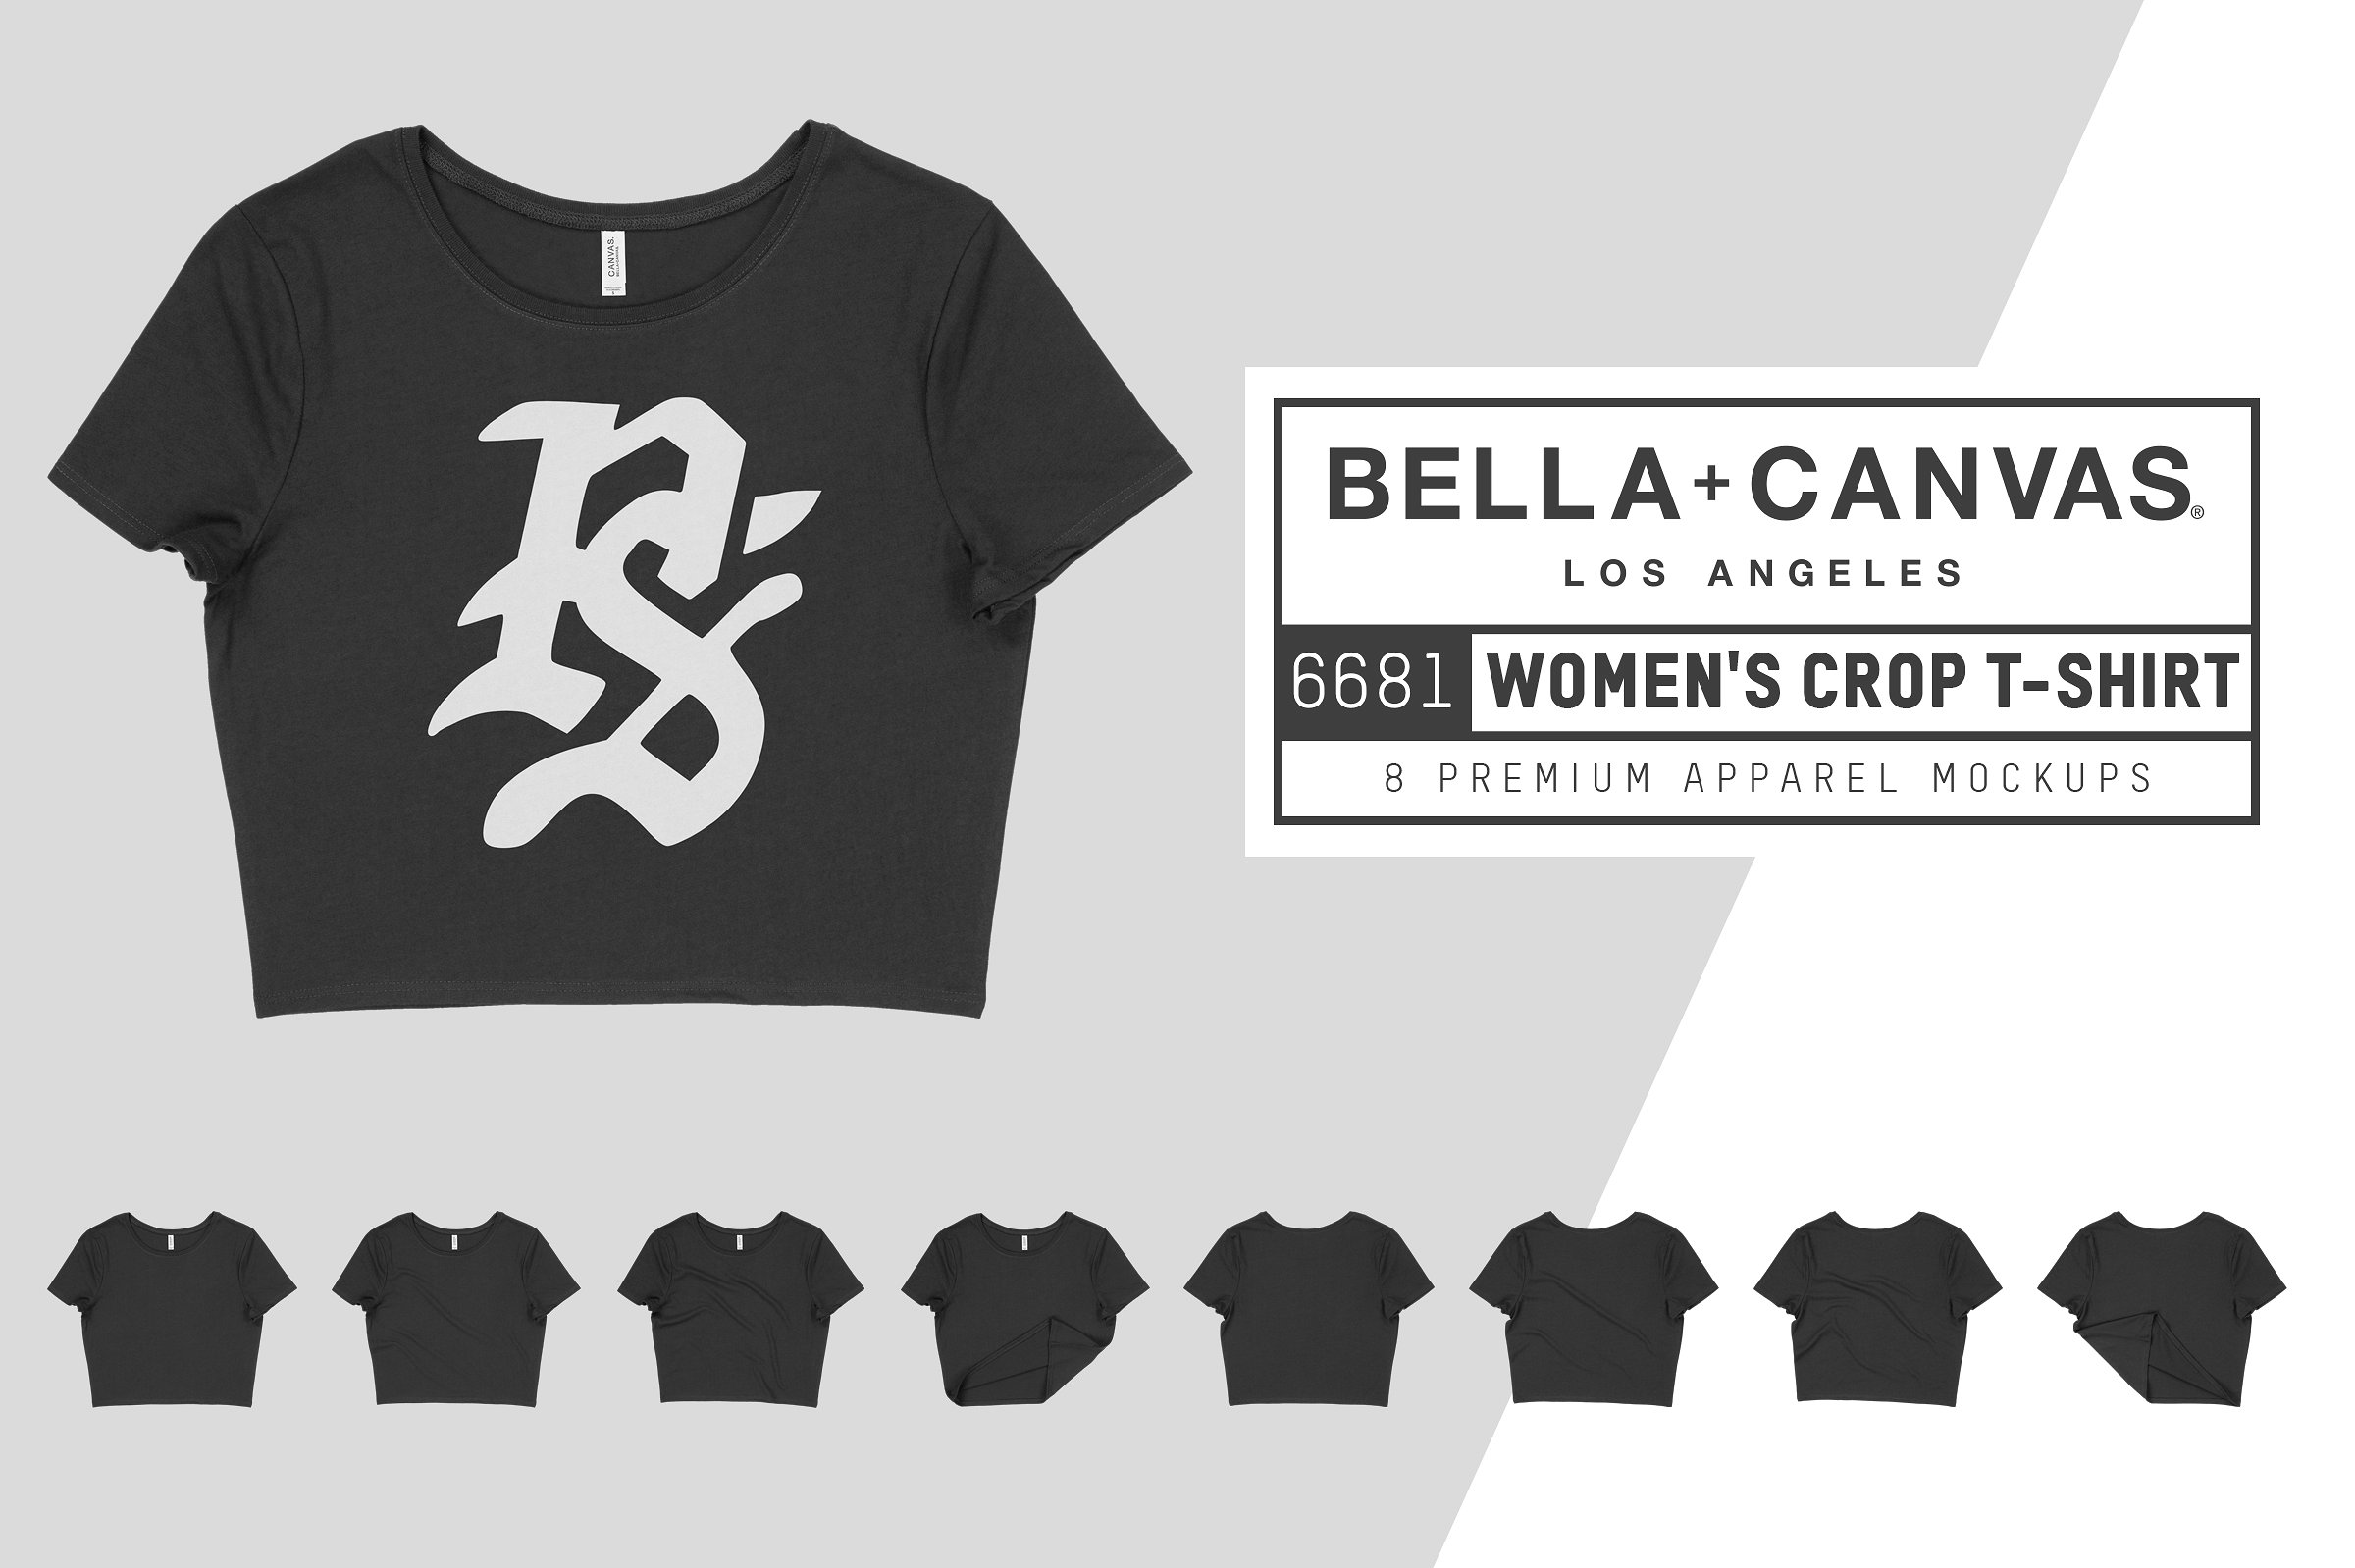 超短款女士T恤服装样机 Bella Canvas 6681 Women’s Crop Tee插图